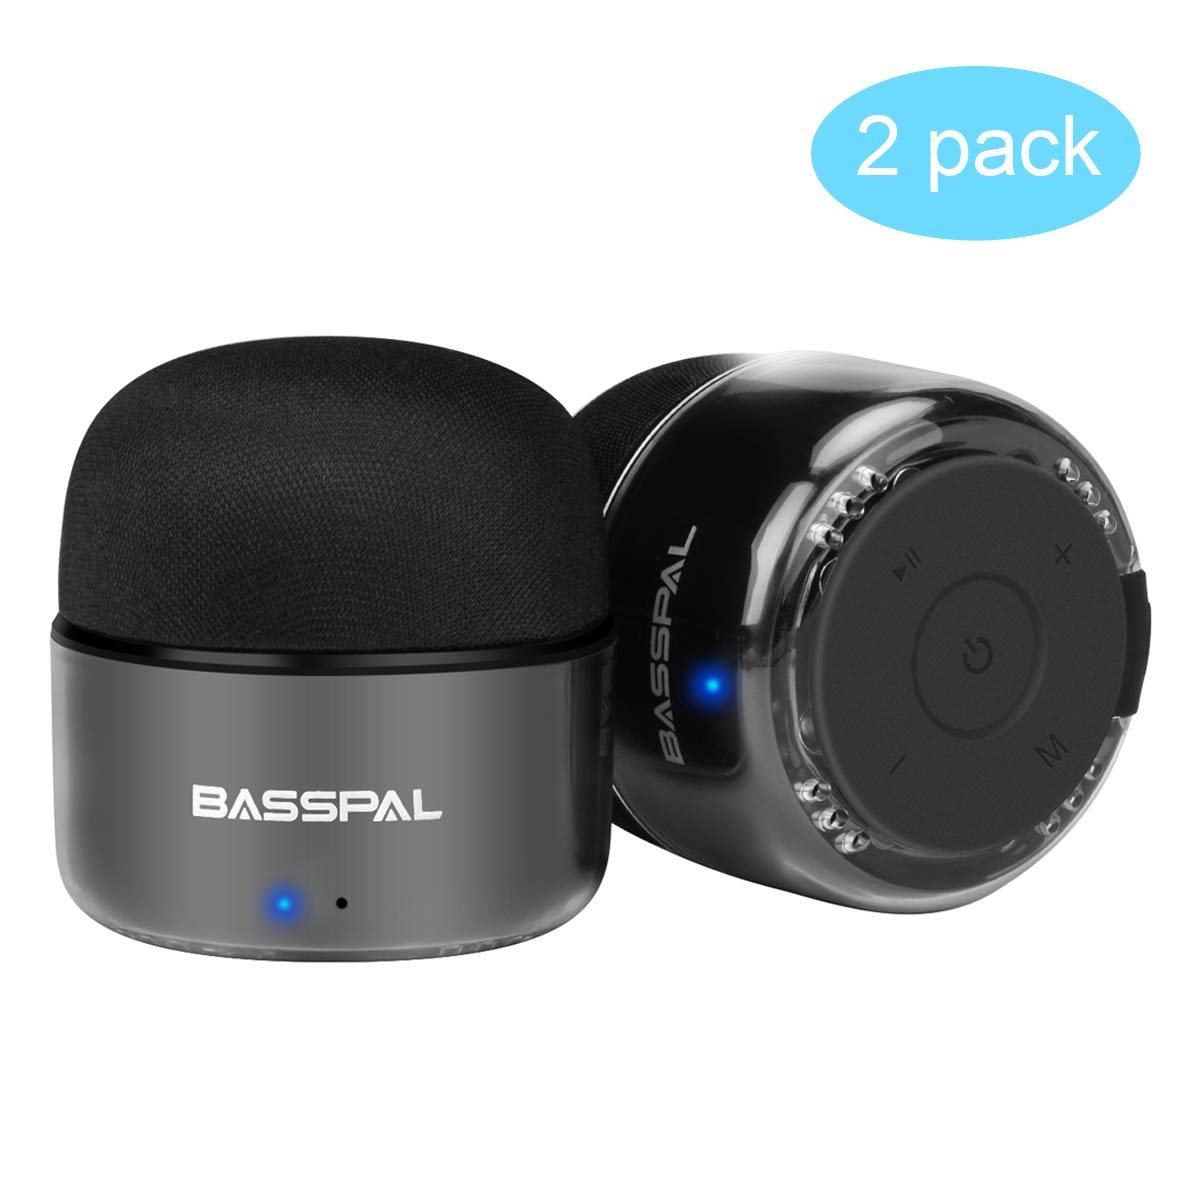 Altavoces Bluetooth Portátiles BassPal solo 19,7€